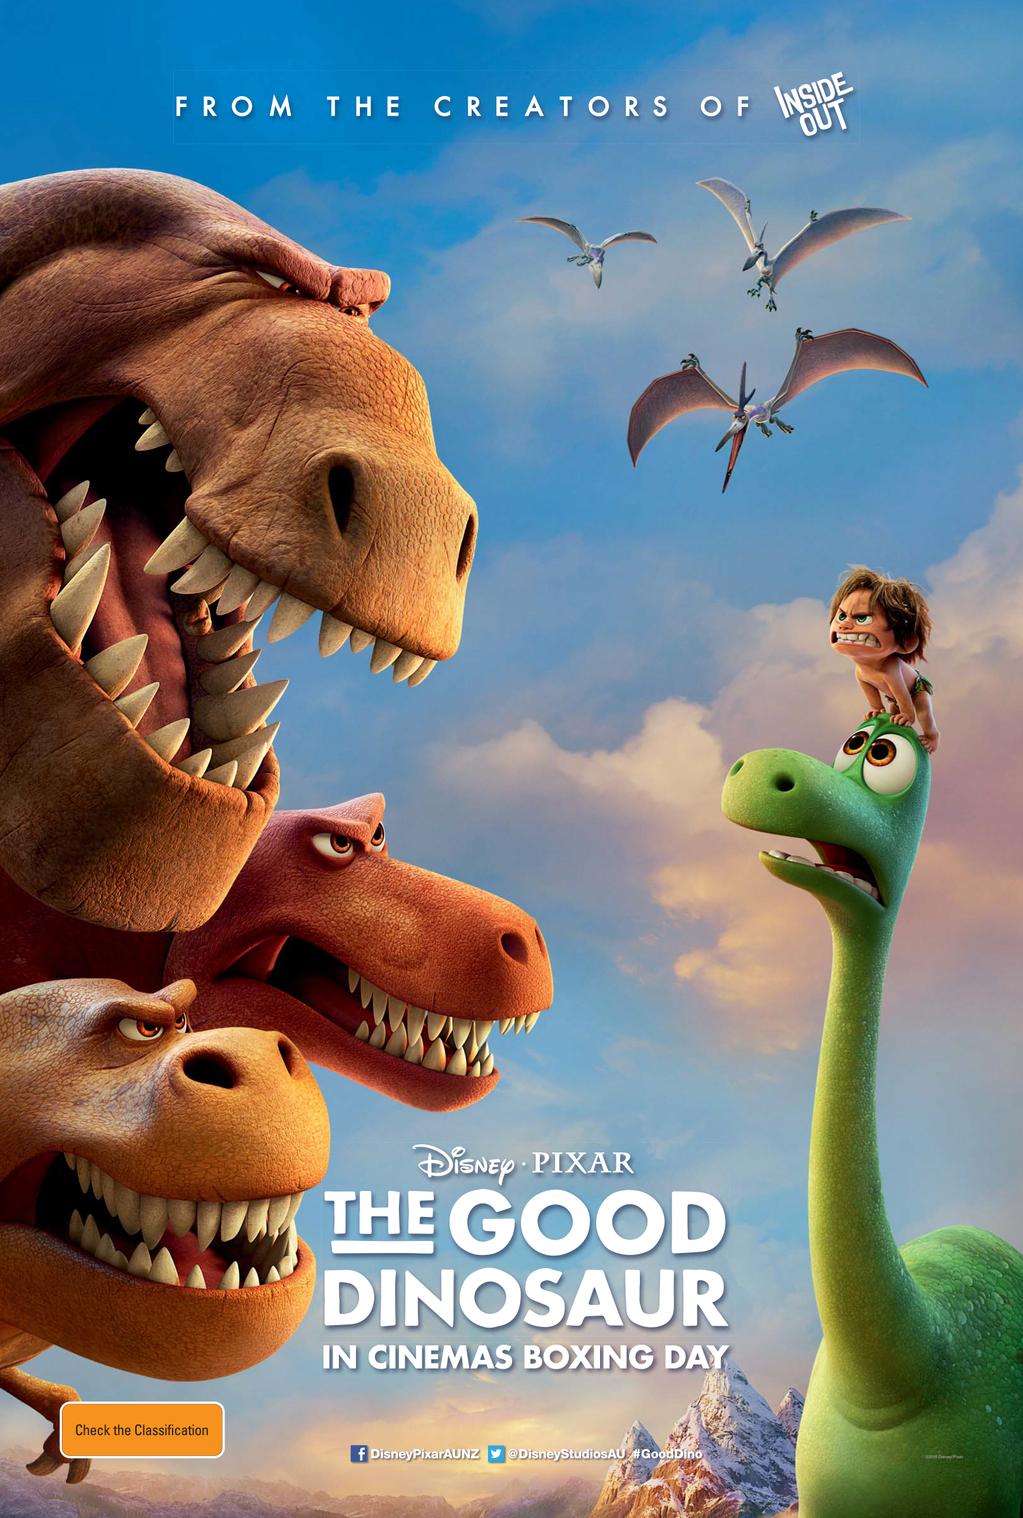 The Good Dinosaur - Chú Khủng Long Tốt Bụng